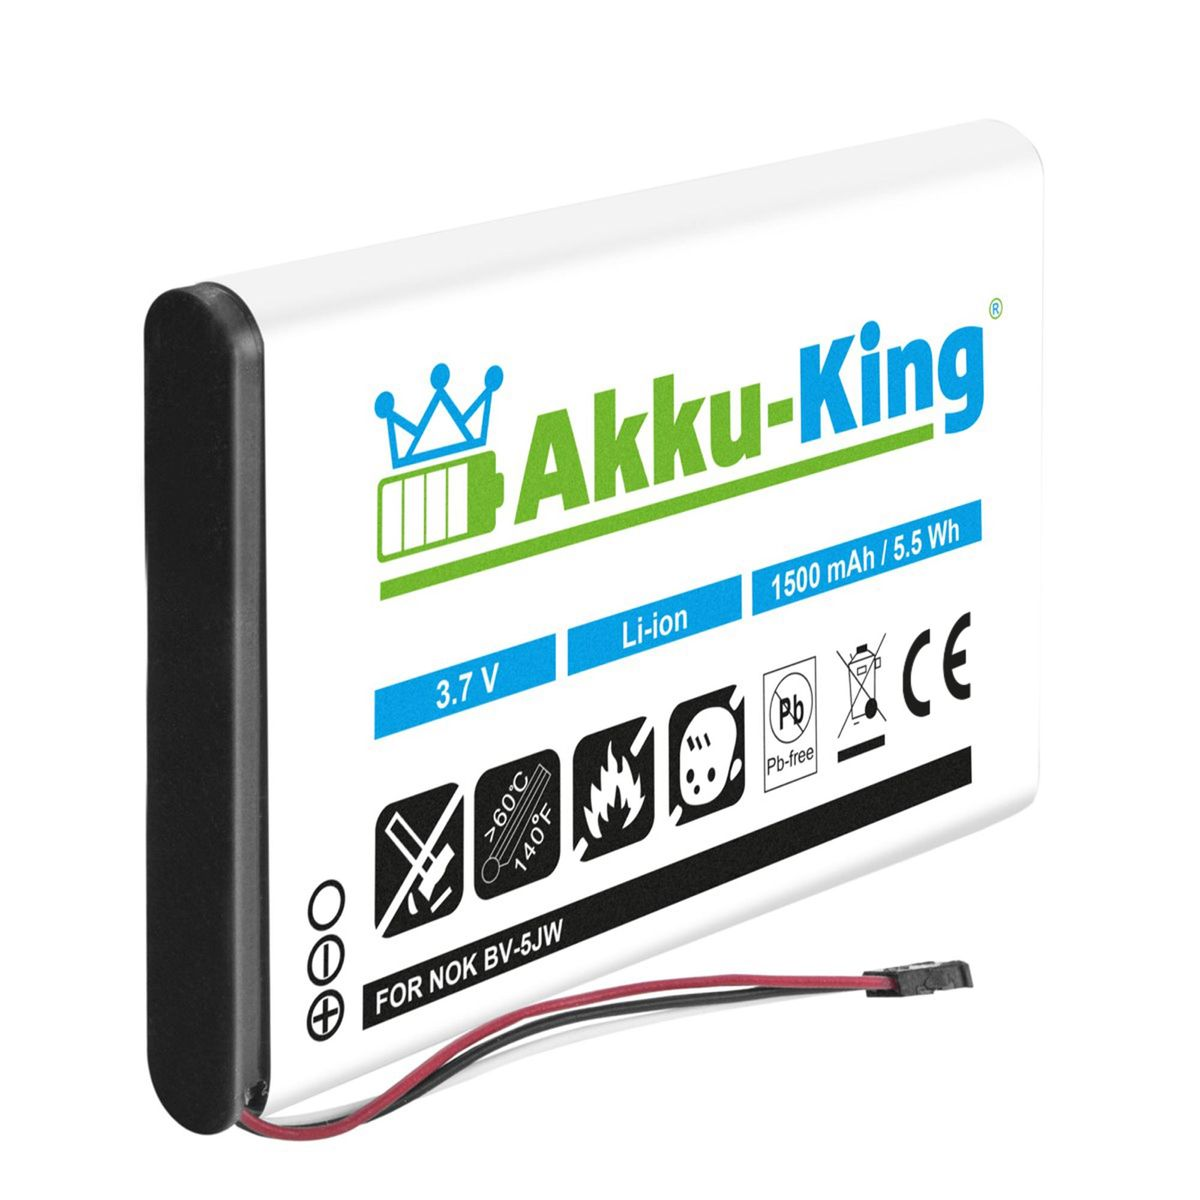 AKKU-KING Akku kompatibel mit Nokia 1500mAh Handy-Akku, Li-Ion Volt, BV-5JW 3.8